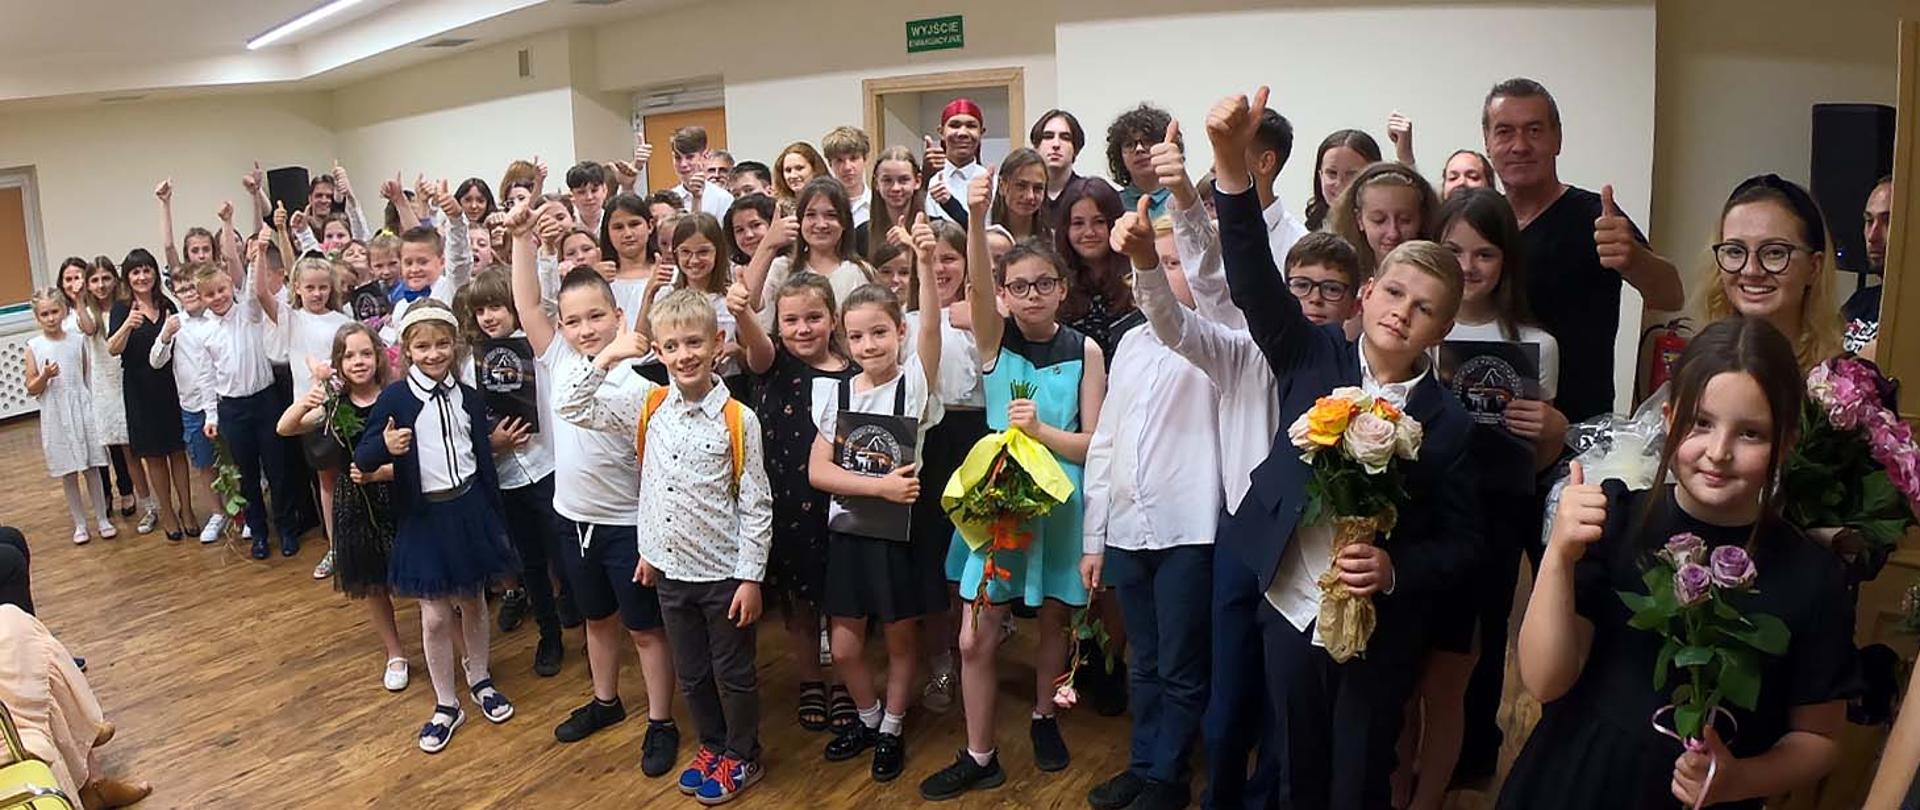 Grupa kilkudziesięciu osób, uczniów i nauczycieli szkoły pozują do zdjęcia w auli szkolnej, wszyscy trzymają w górze uniesione kciuki, niektórzy mają w rękach bukiety kwiatów.